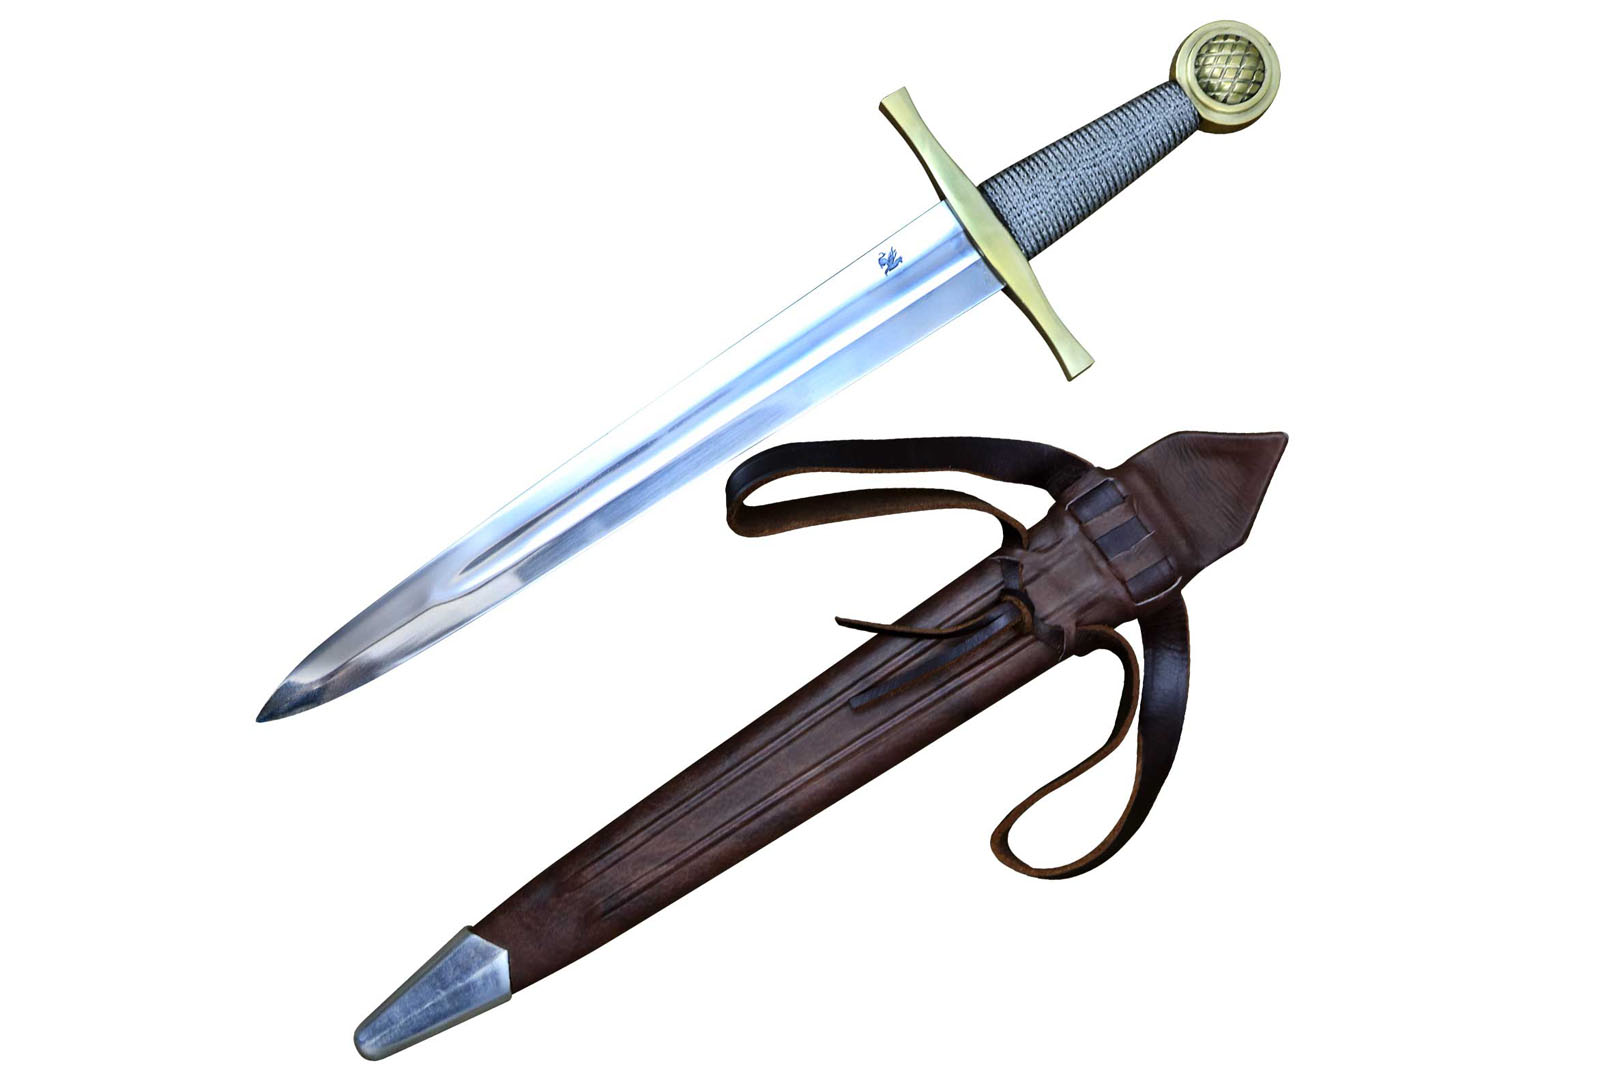 The Excalibur Dagger